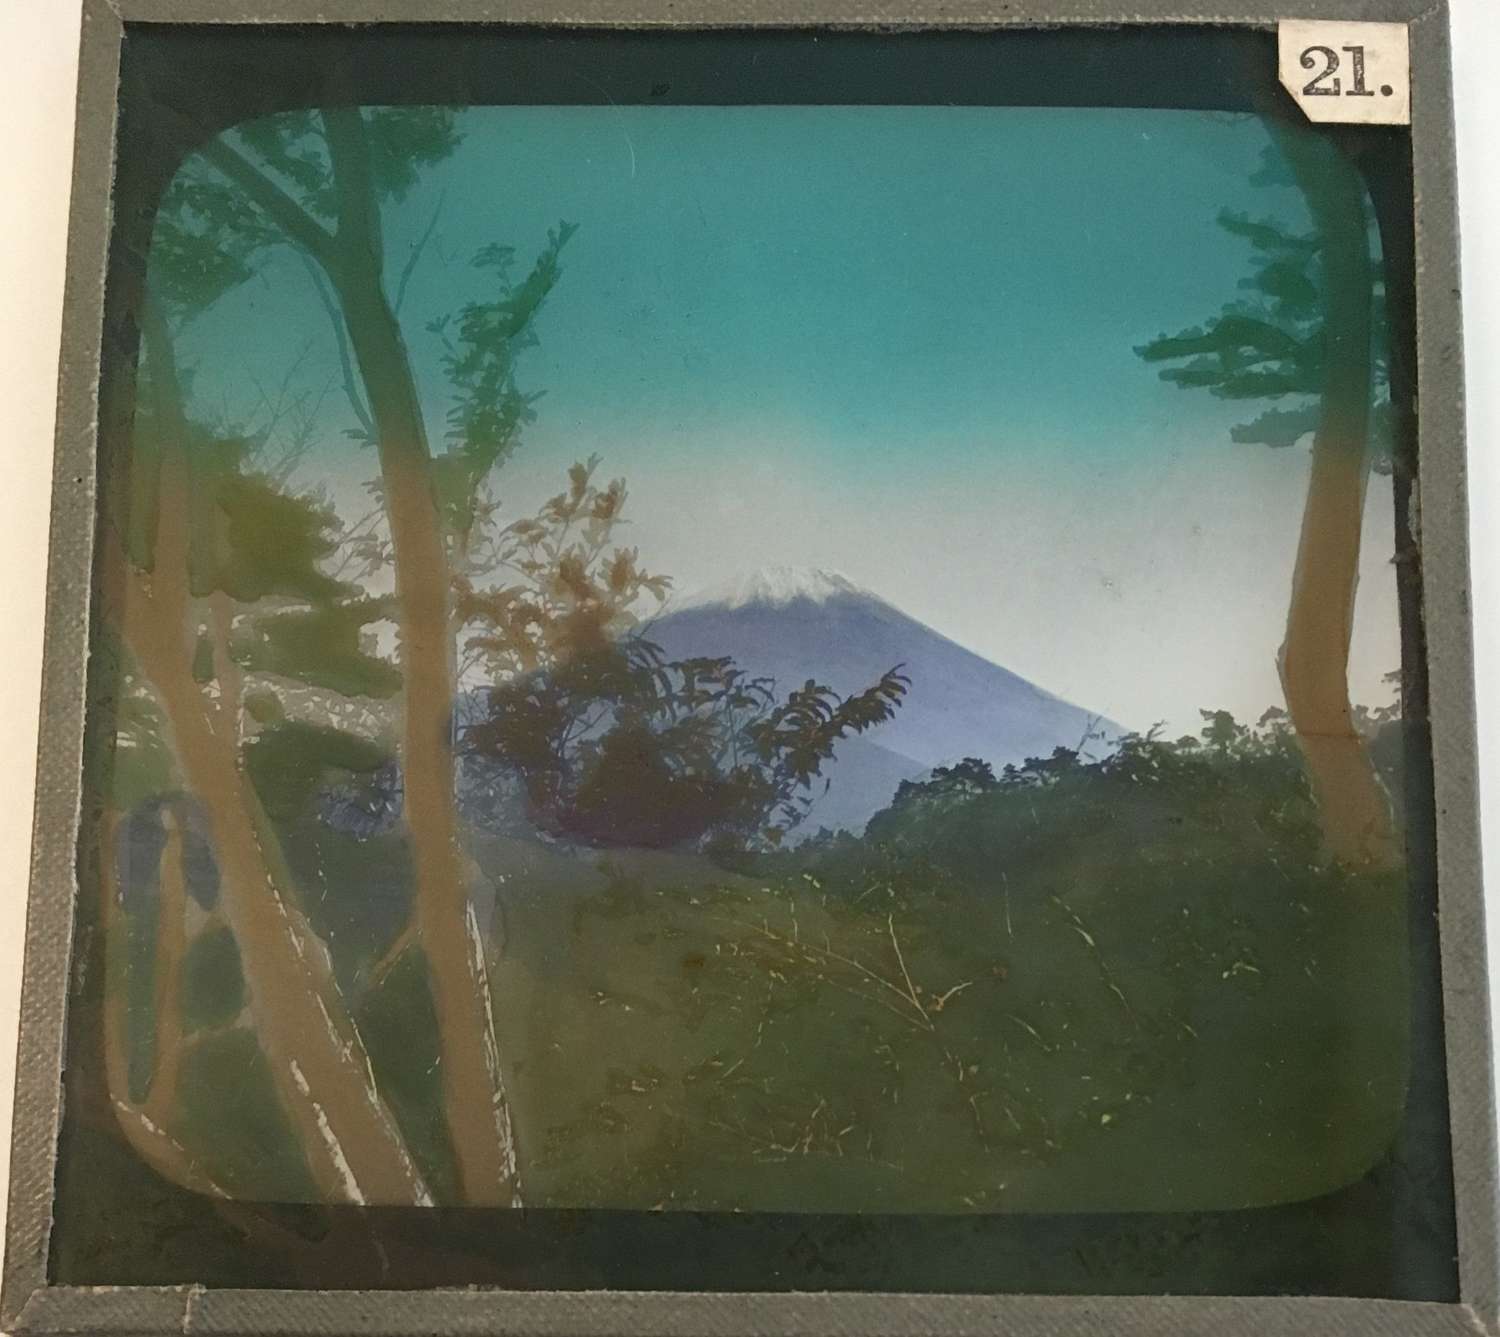  Lantern Slide  View of  Mount Fuji  Japan C1910